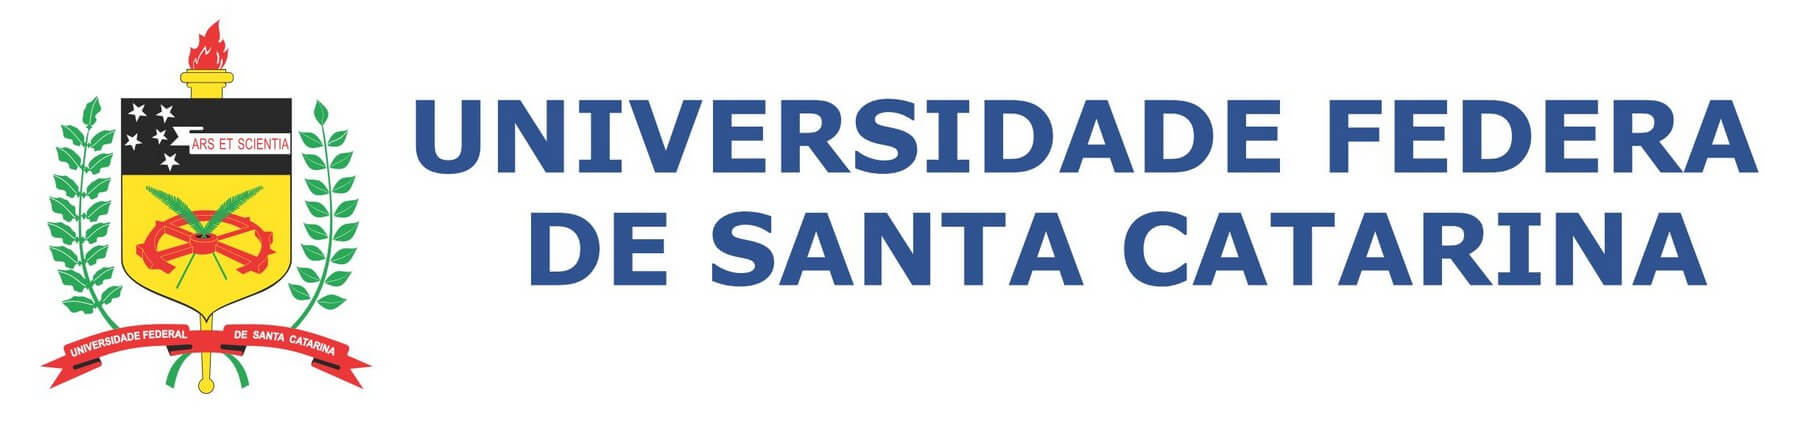 Universidade Federal de Santa Catarina UFSC logo